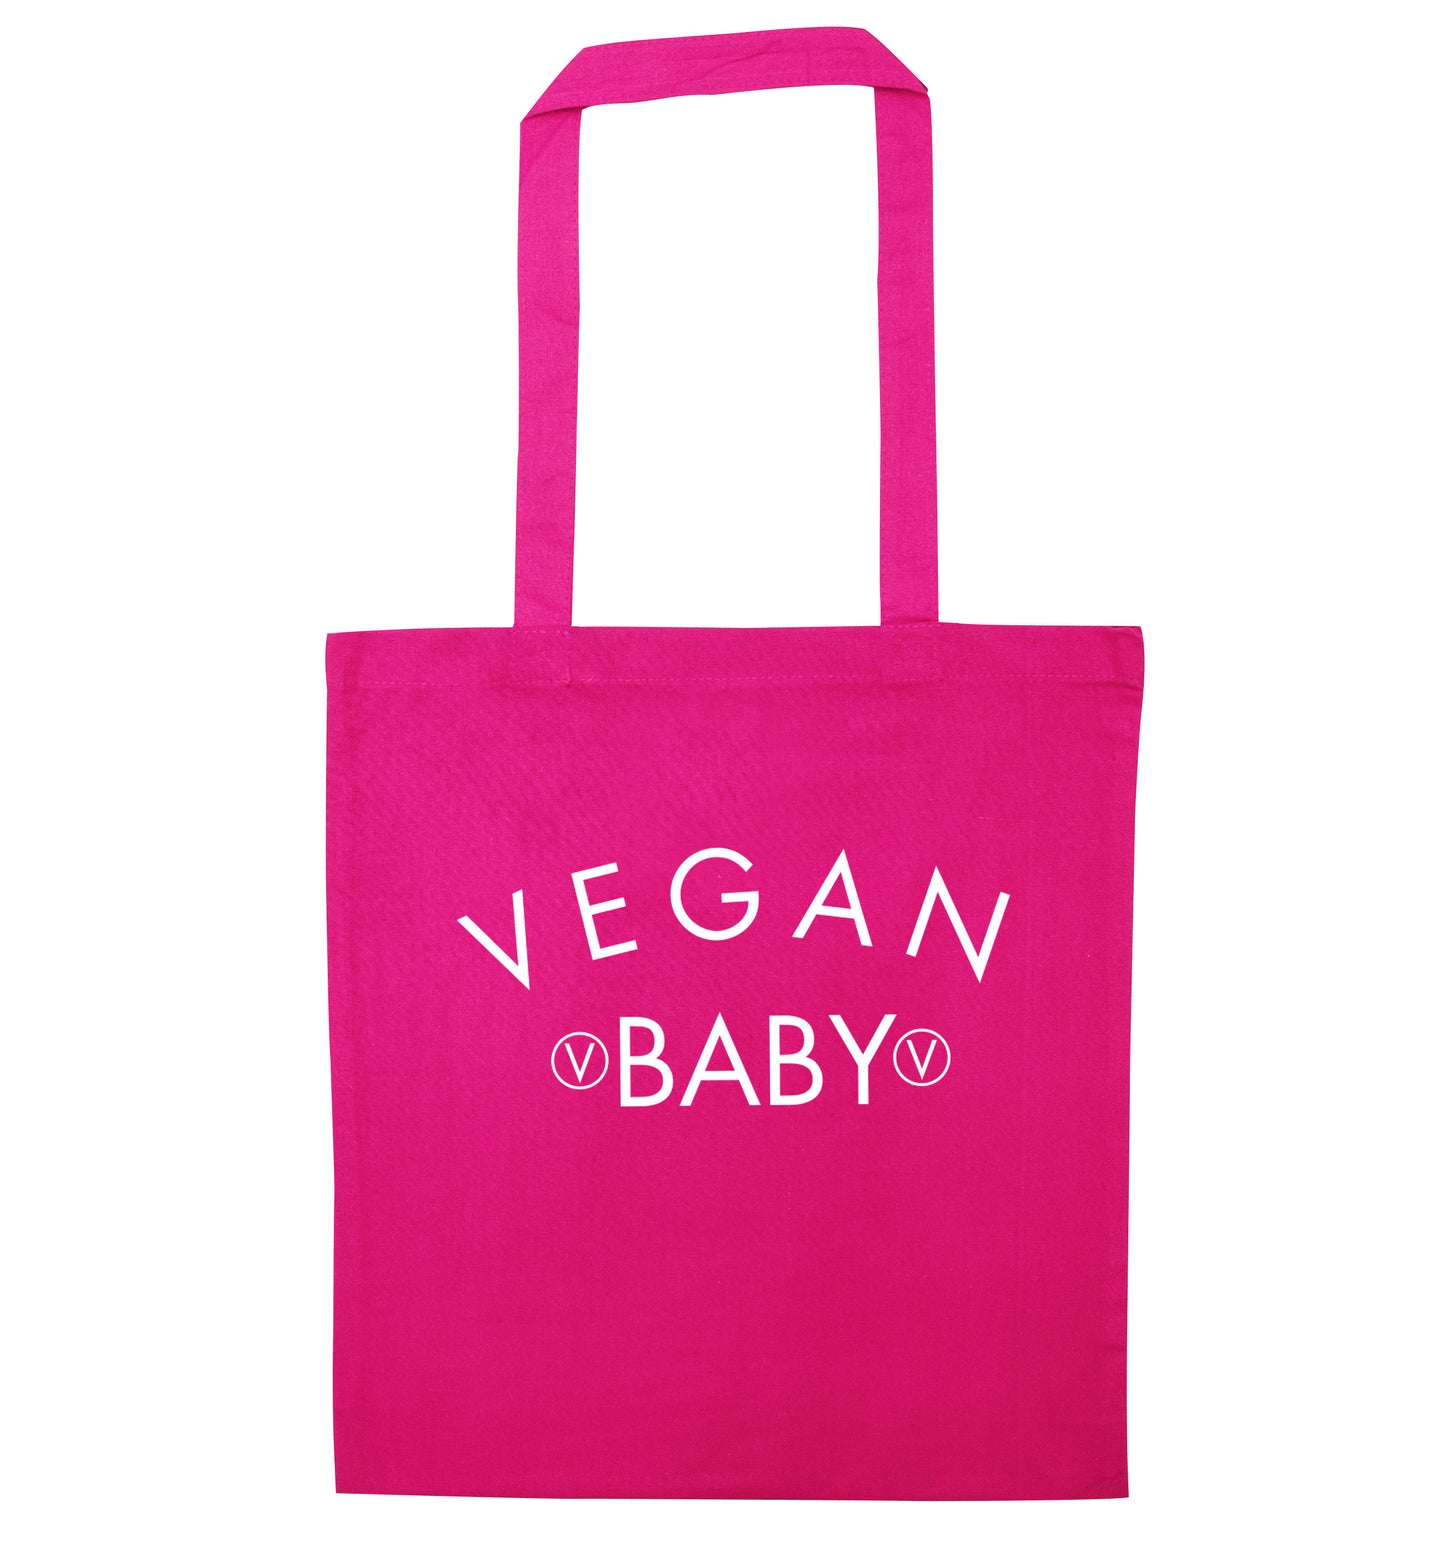 Vegan baby pink tote bag